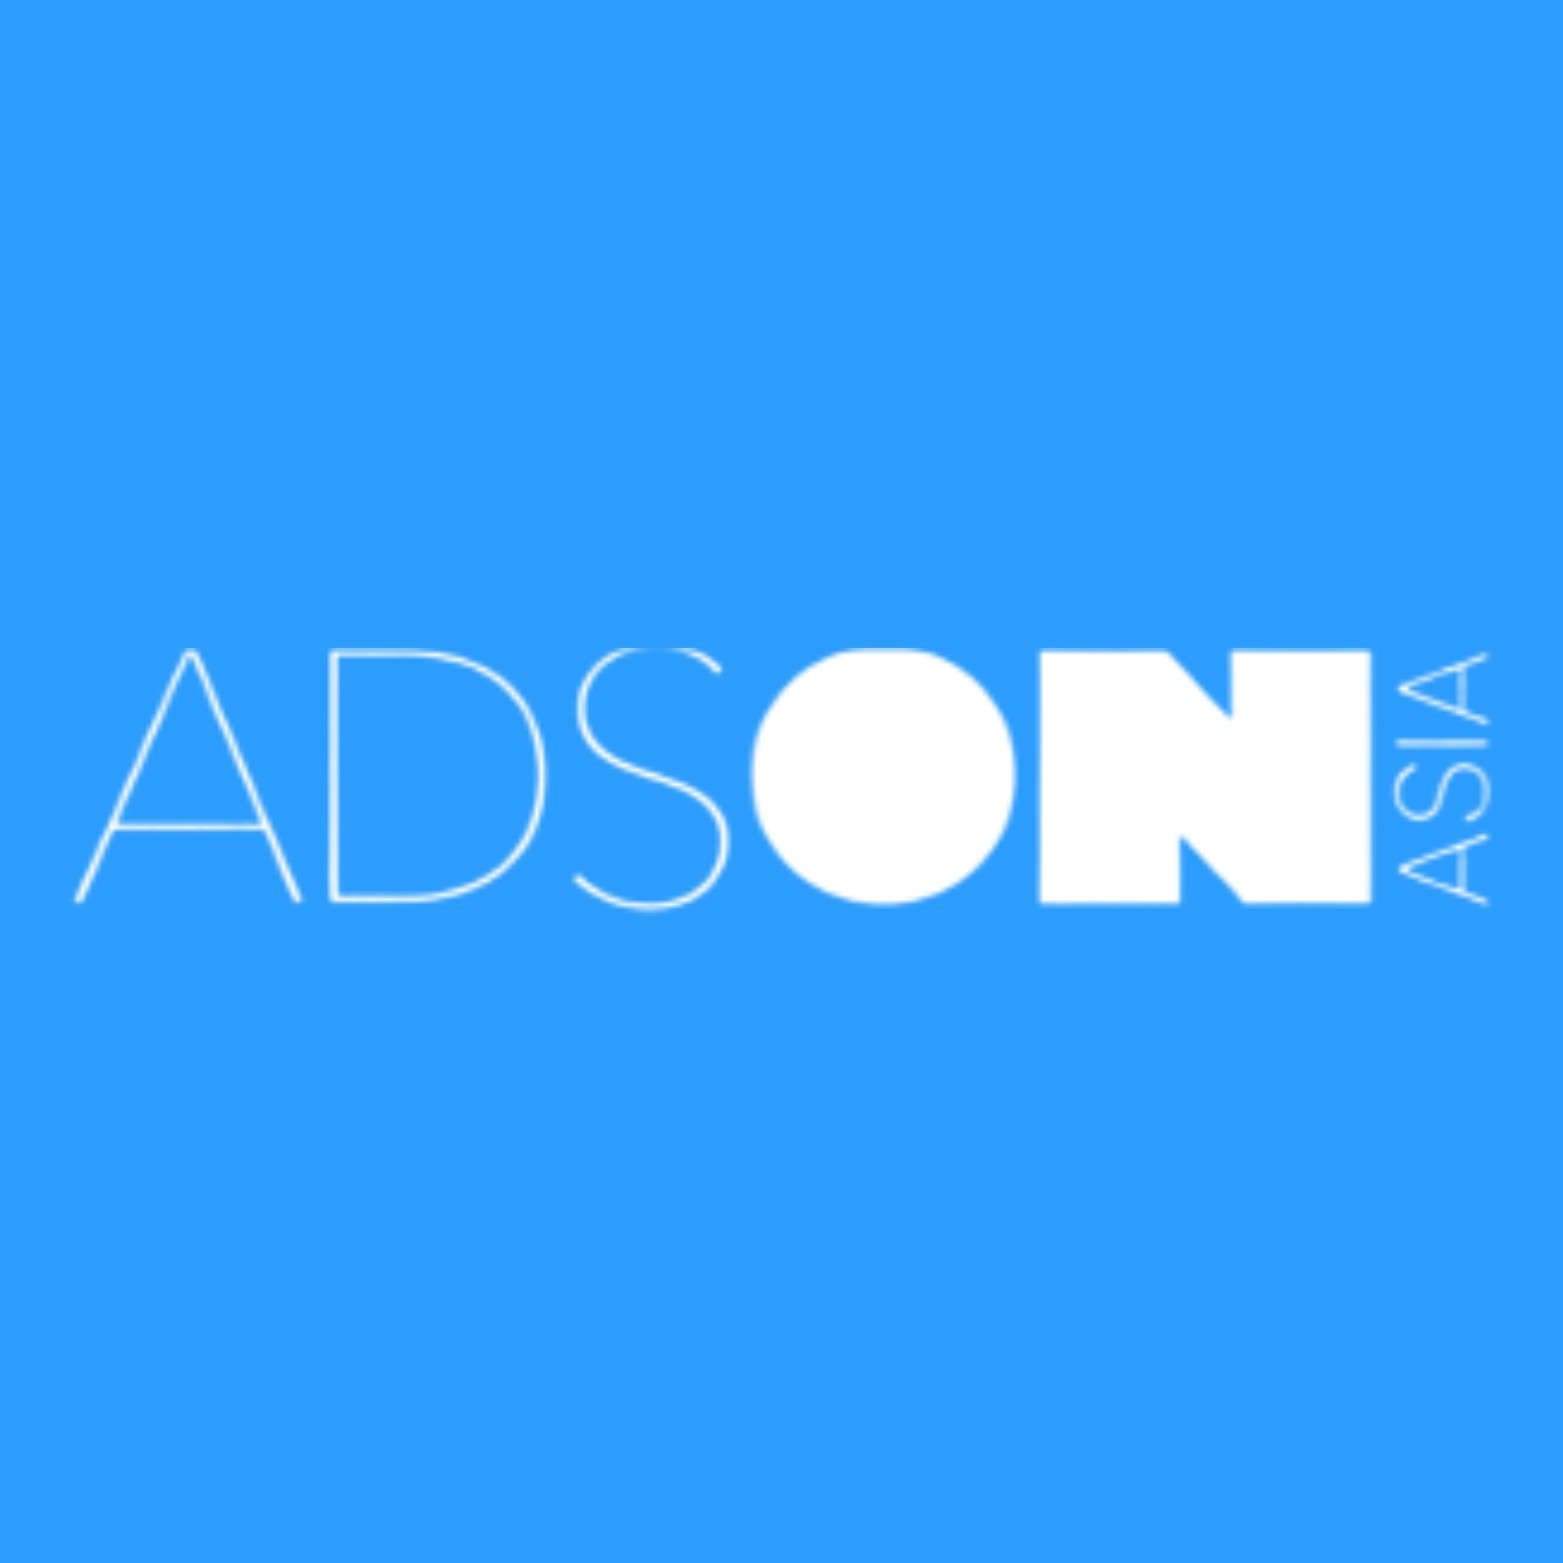 AdsON Asia